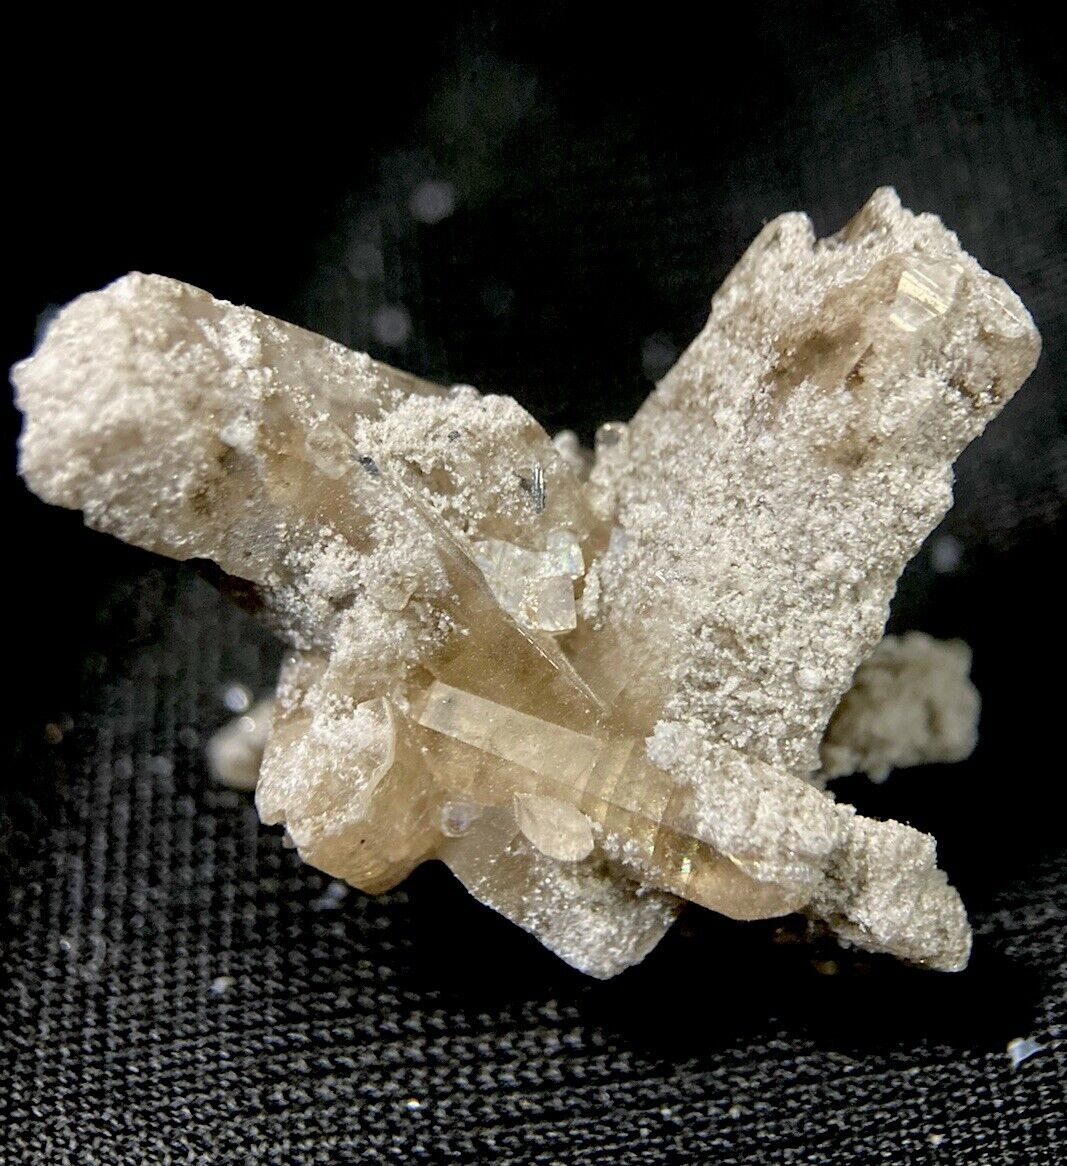 TOPAZ & BIXBYITE Crystal on Rhyolite Mineral Gem Cluster - Thomas Range, UTAH